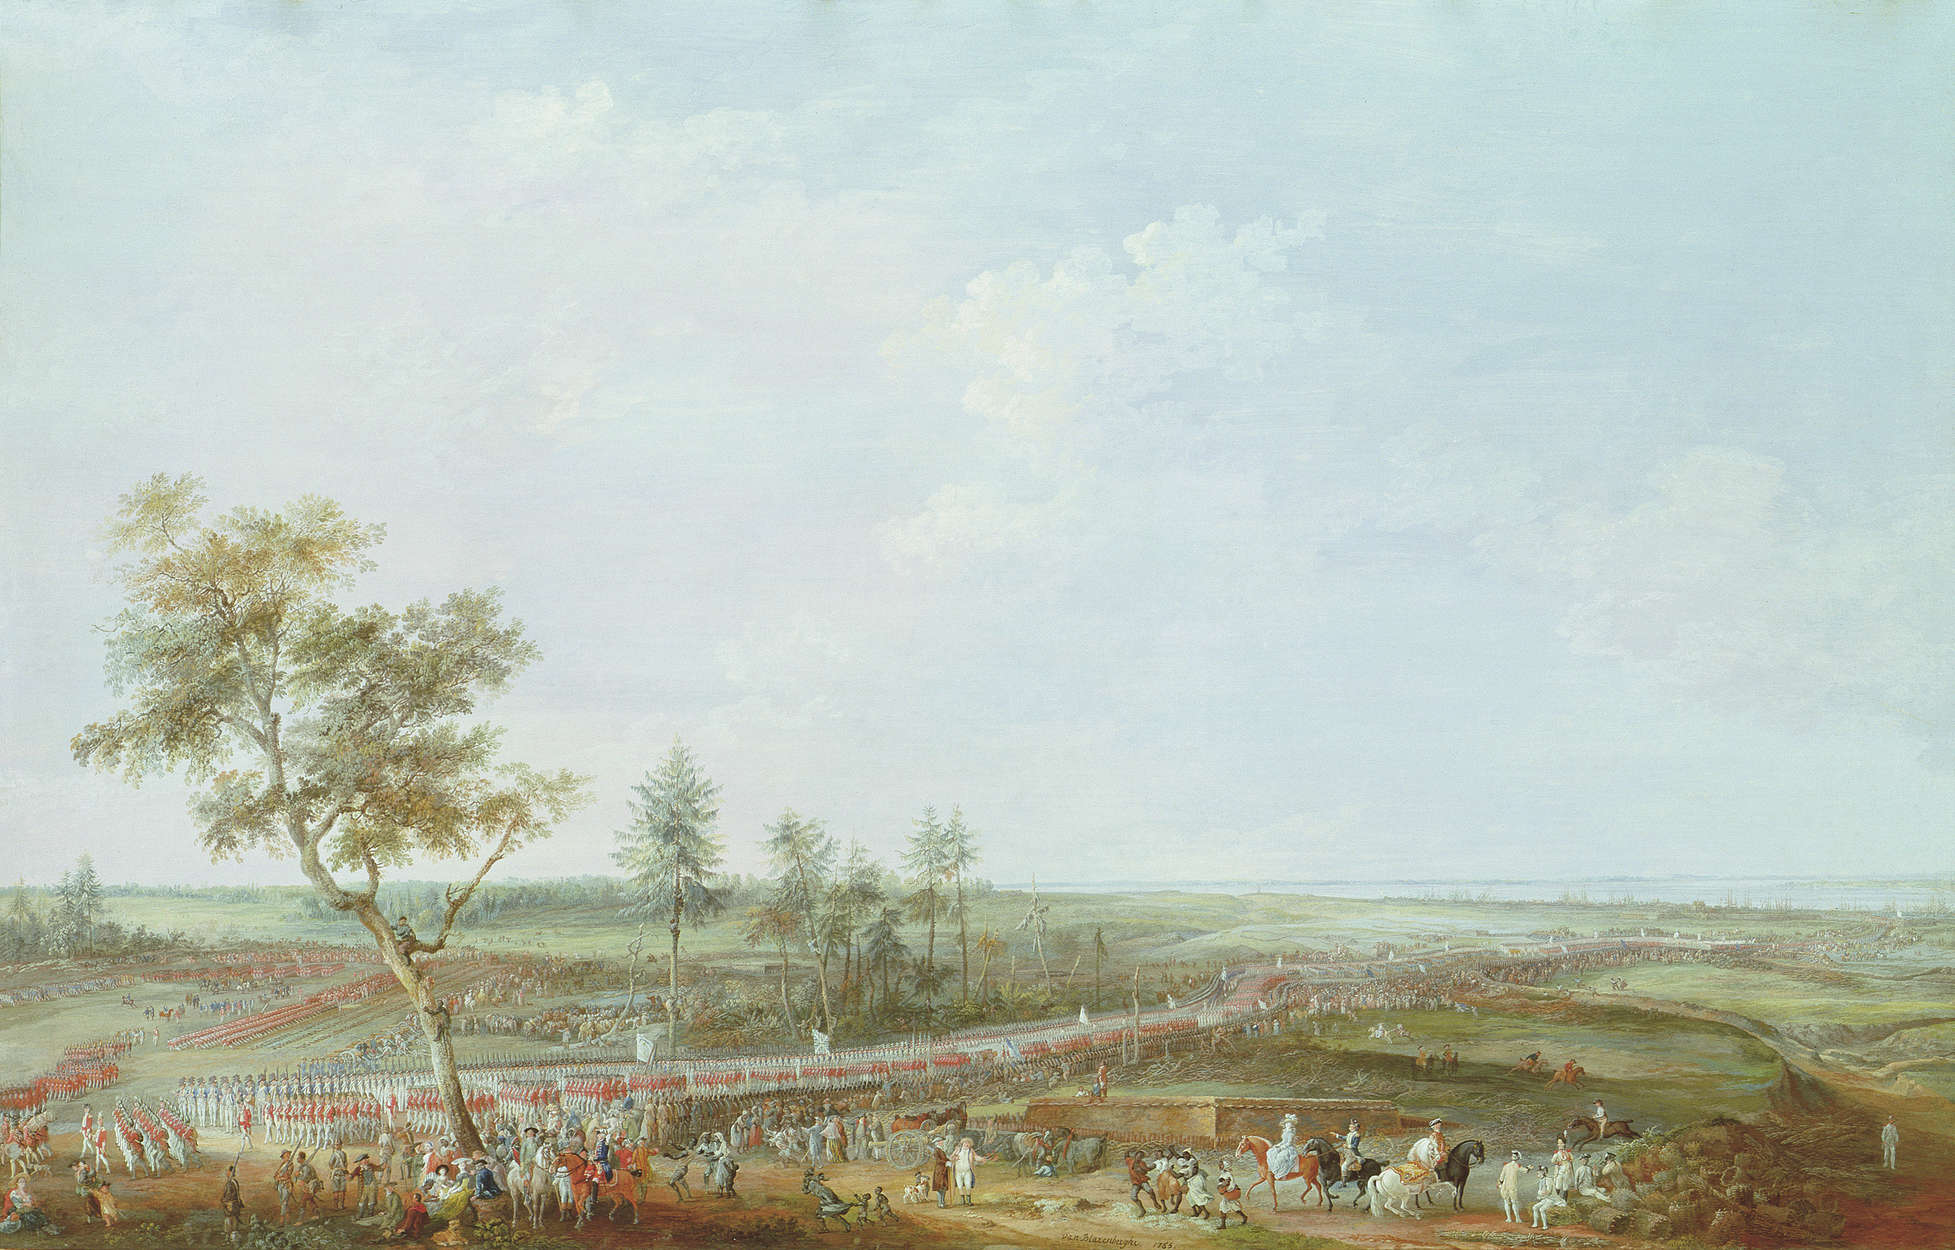             Papier peint panoramique "Le siège de Yorktown" par Jacob van Blarenberghe
        